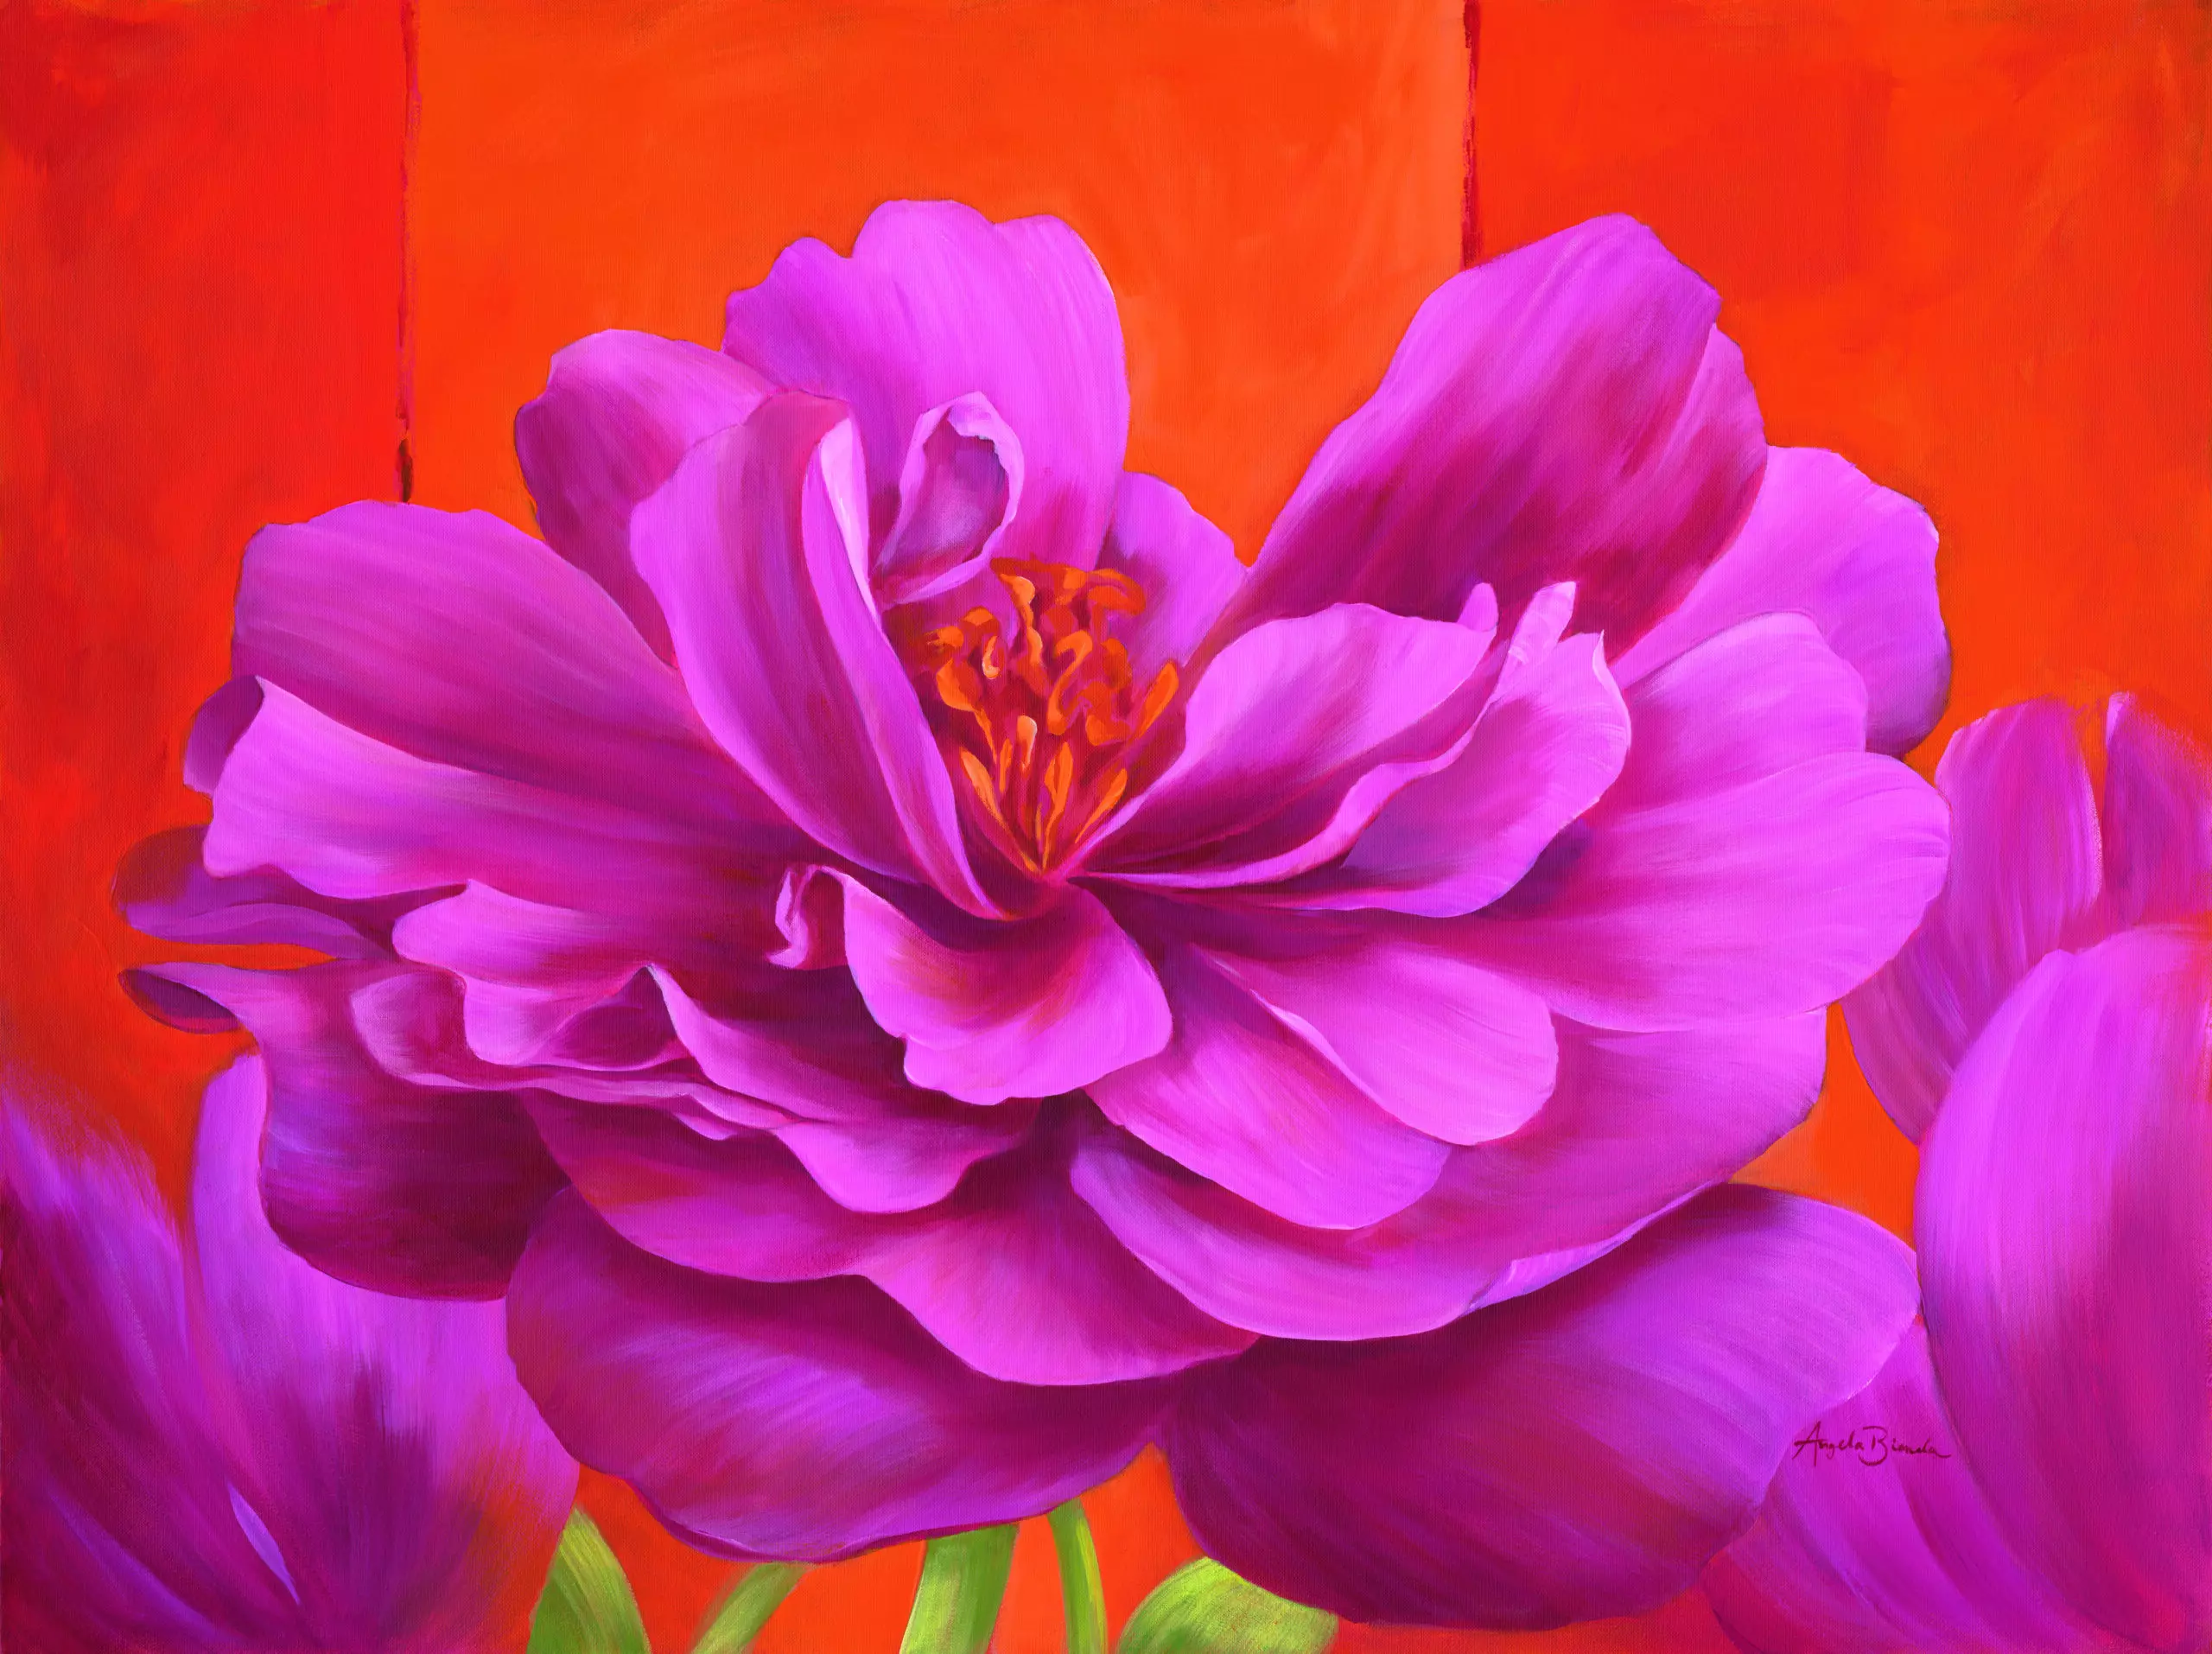 Wandbild (5011) Think Pink präsentiert: Stillleben,Kreatives,Details und Strukturen,Natur,Blumen und Blüten,Makro,Floral,Modern